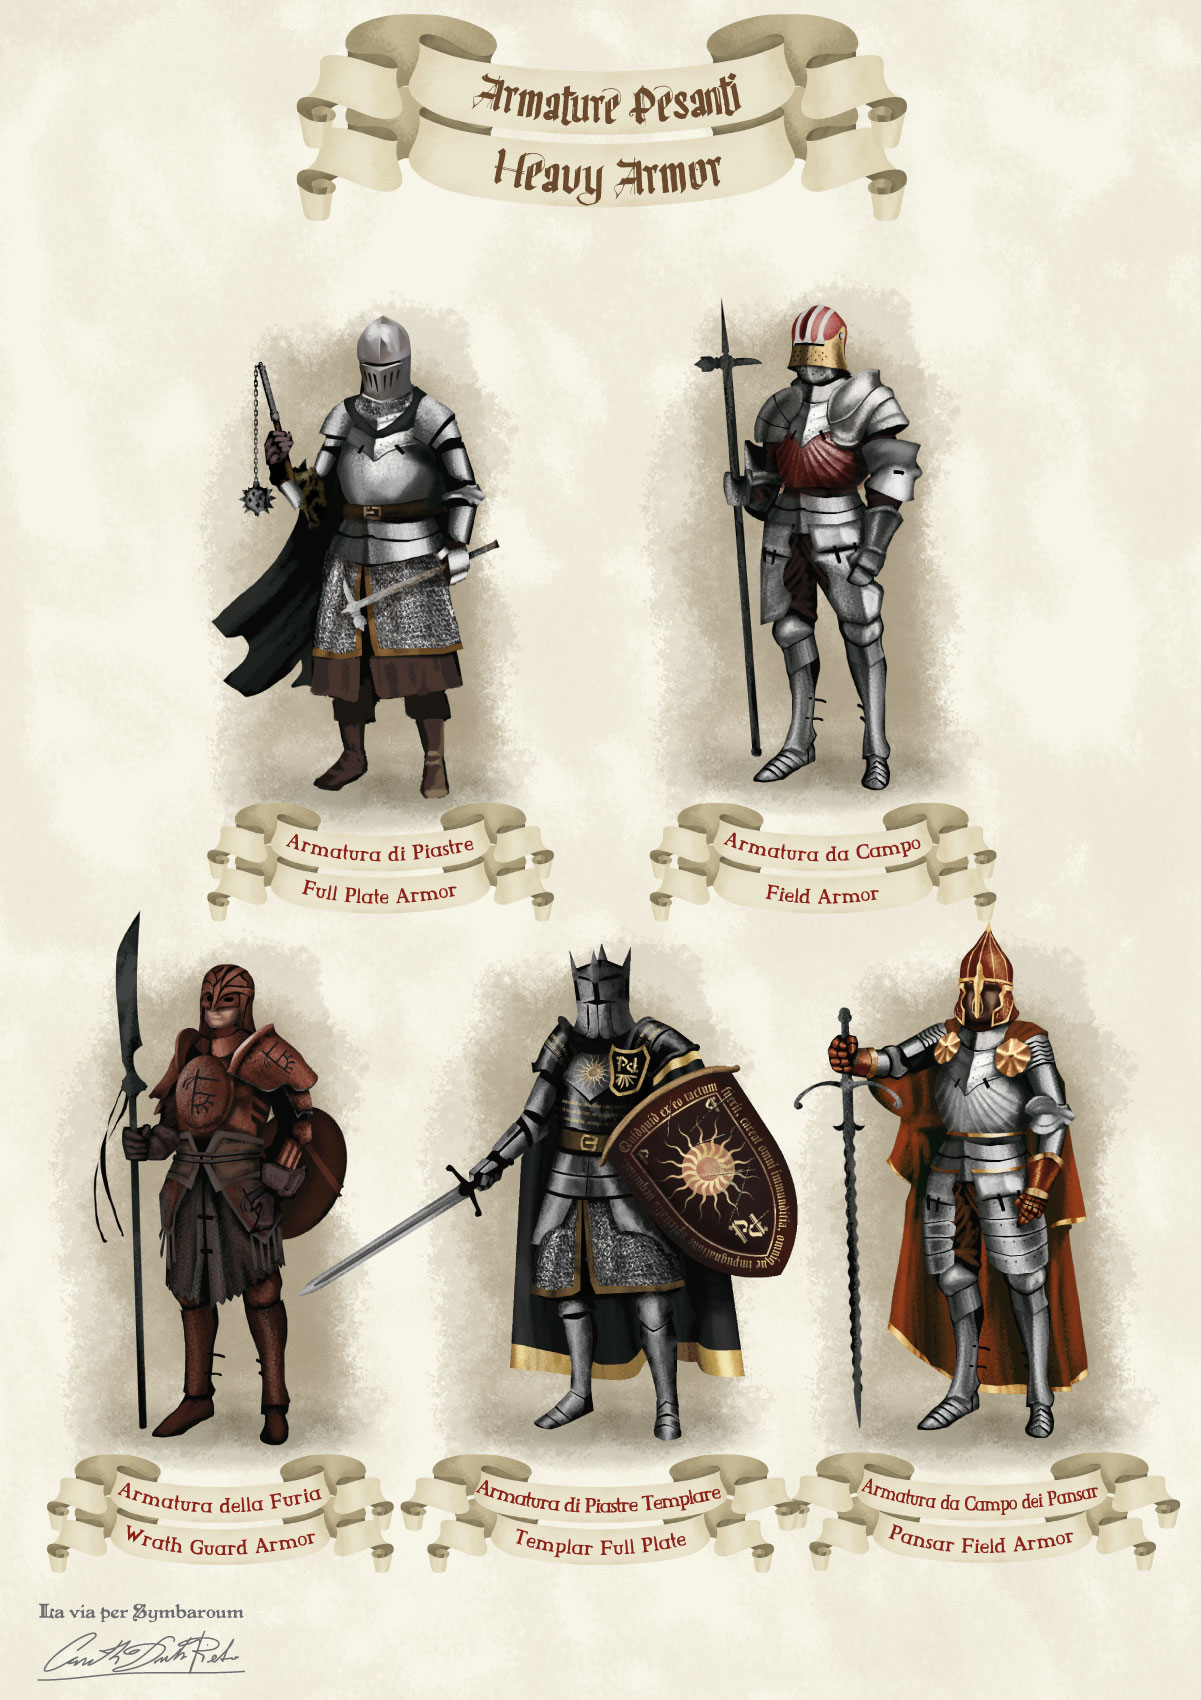 Immagini di armature pesanti fantasy medievali del gioco di ruolo Symbaroum